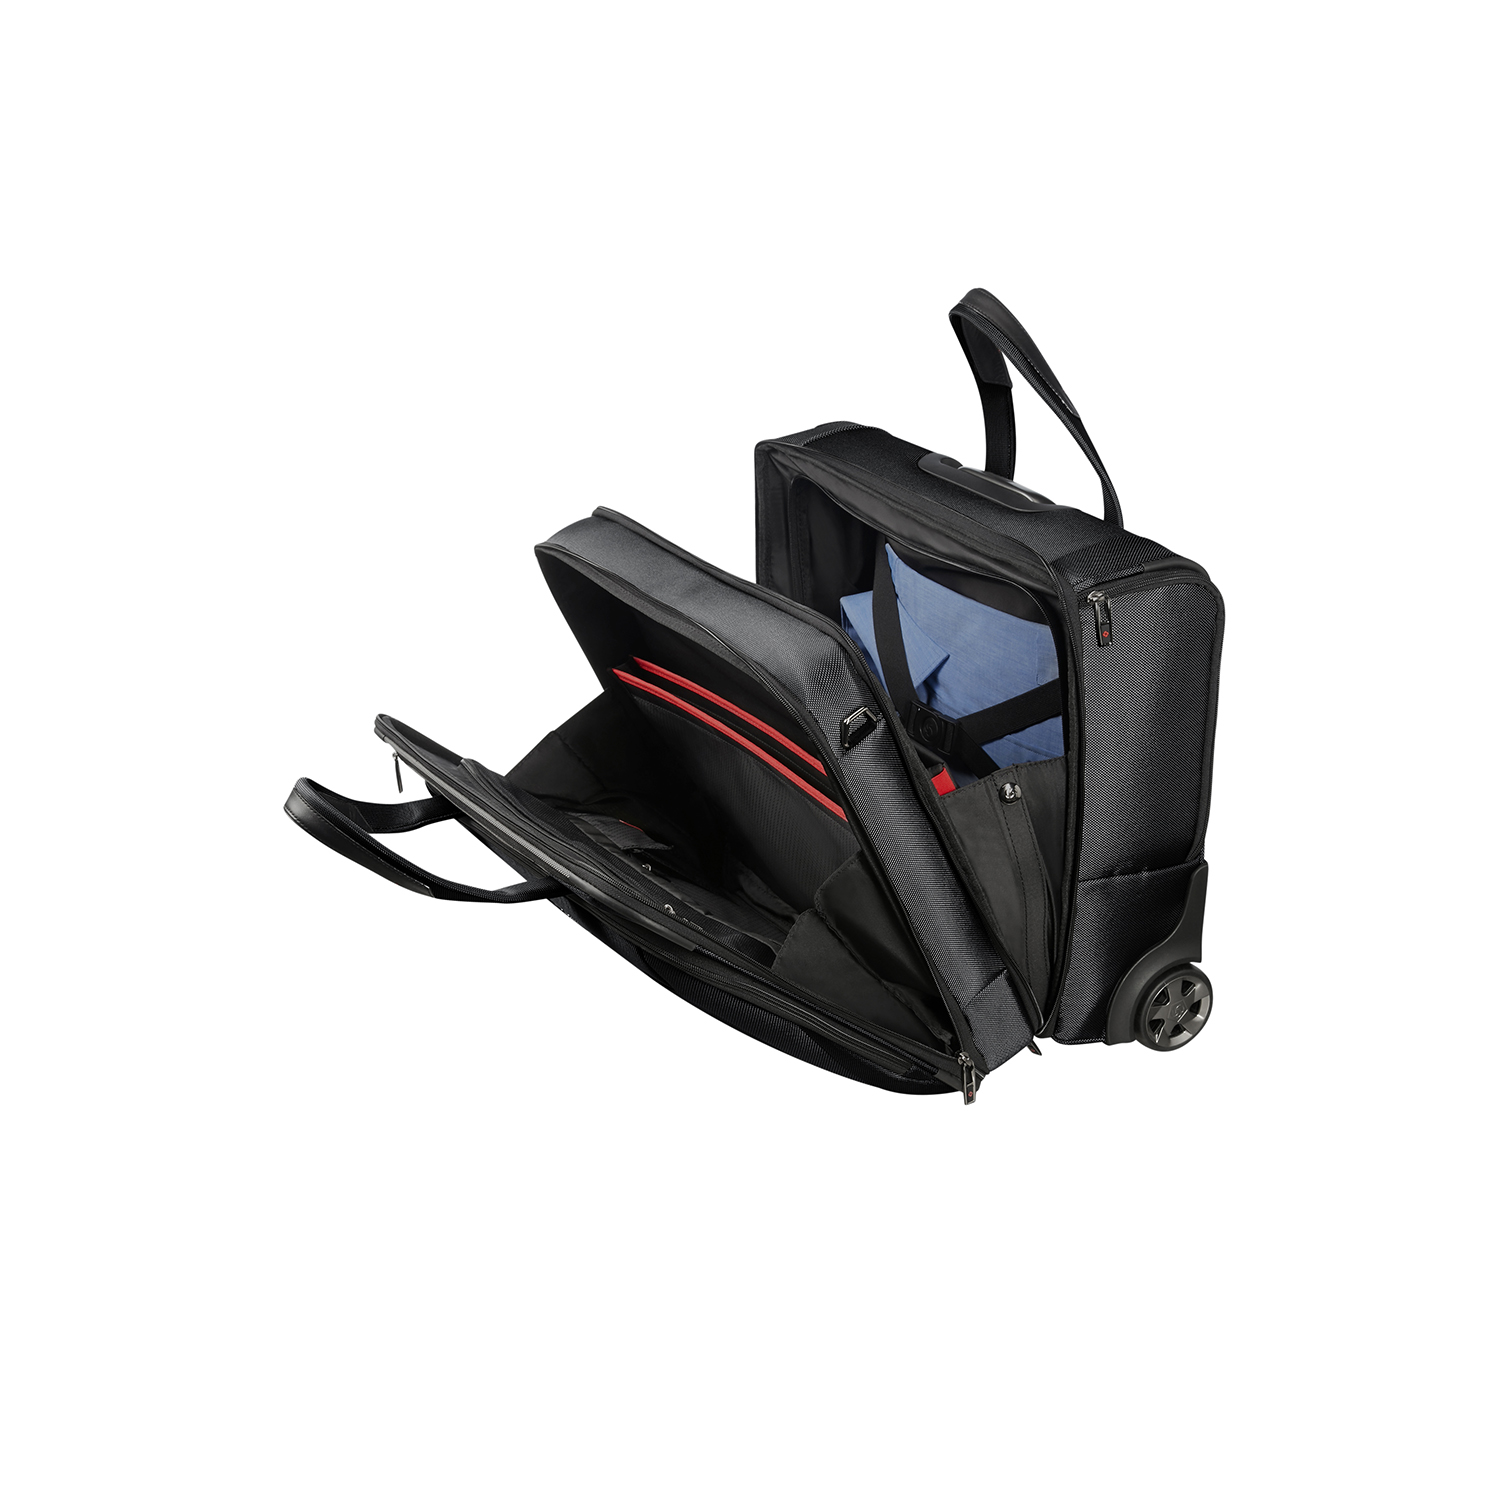 PRO-DLX 5-Tekerlekli Laptop Çantası 17.3" SCG7-014-SF000*09